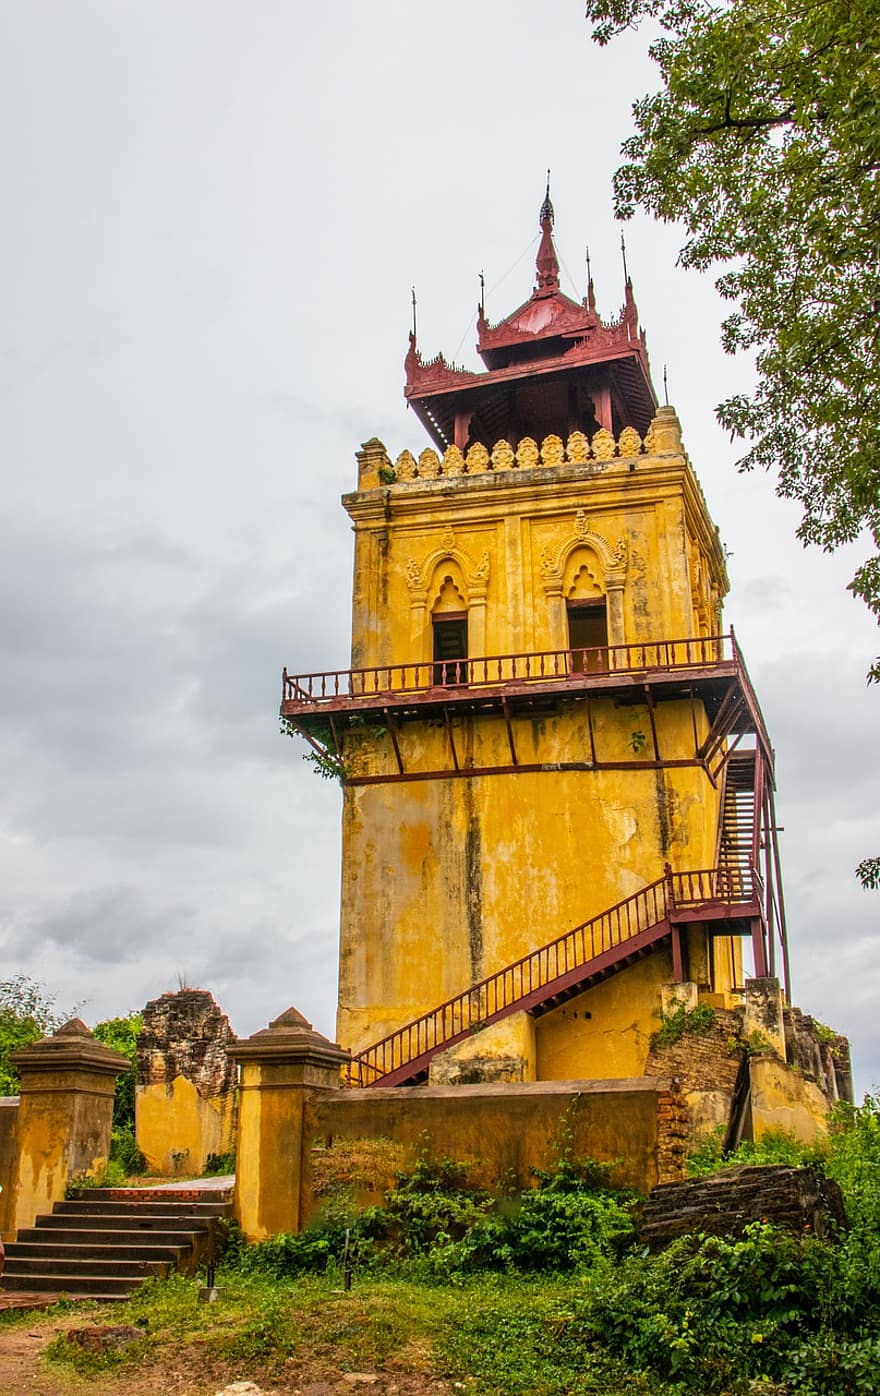 costruzione, pagoda, torre di osservazione, tradizionale, architettura, mingun, Myanmar, mandalay, birmania, paesaggio, tradizione